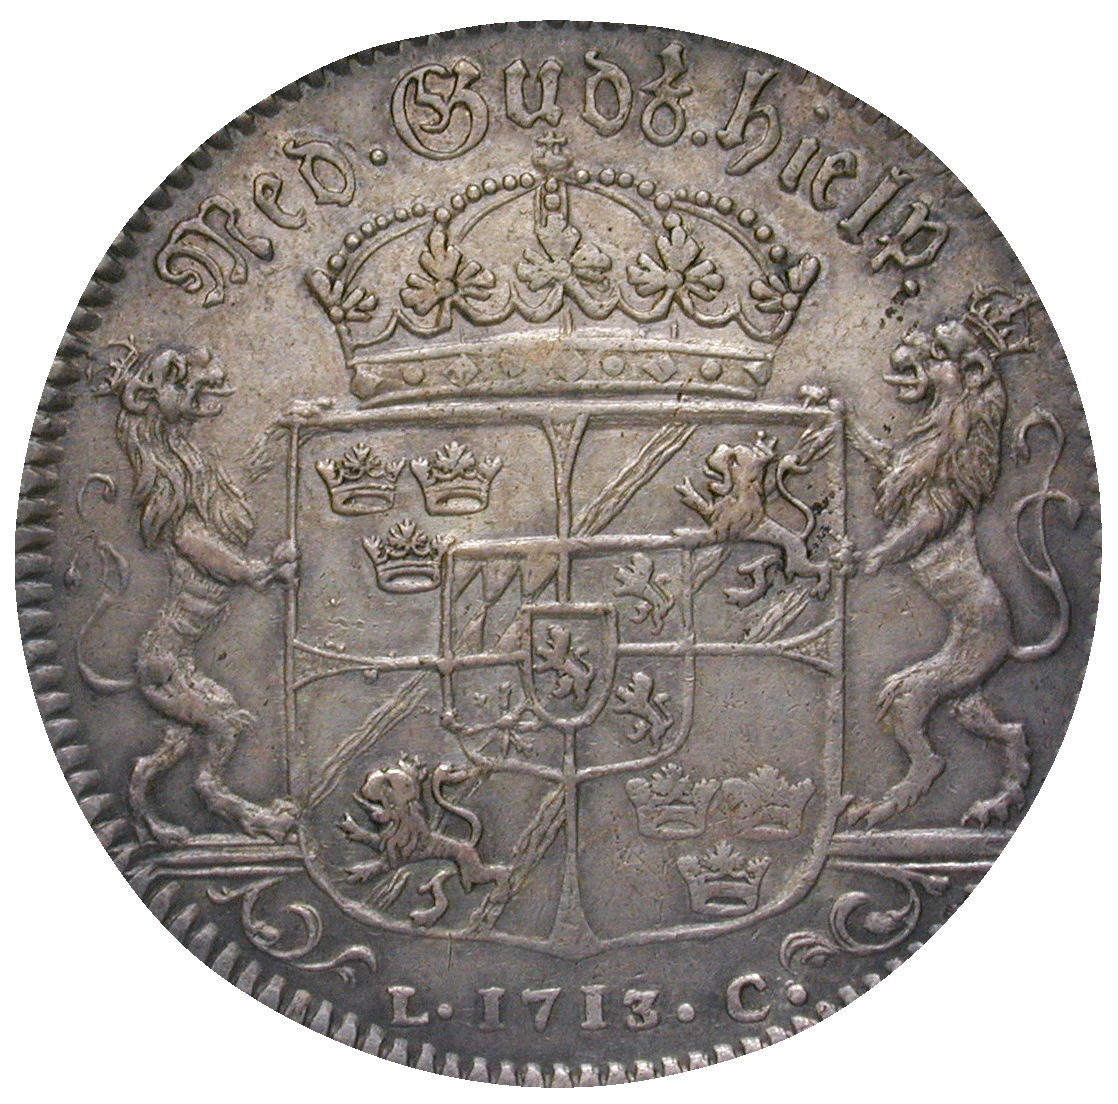 Kingdom of Sweden, Charles XII, Riksdaler 1713 (reverse)